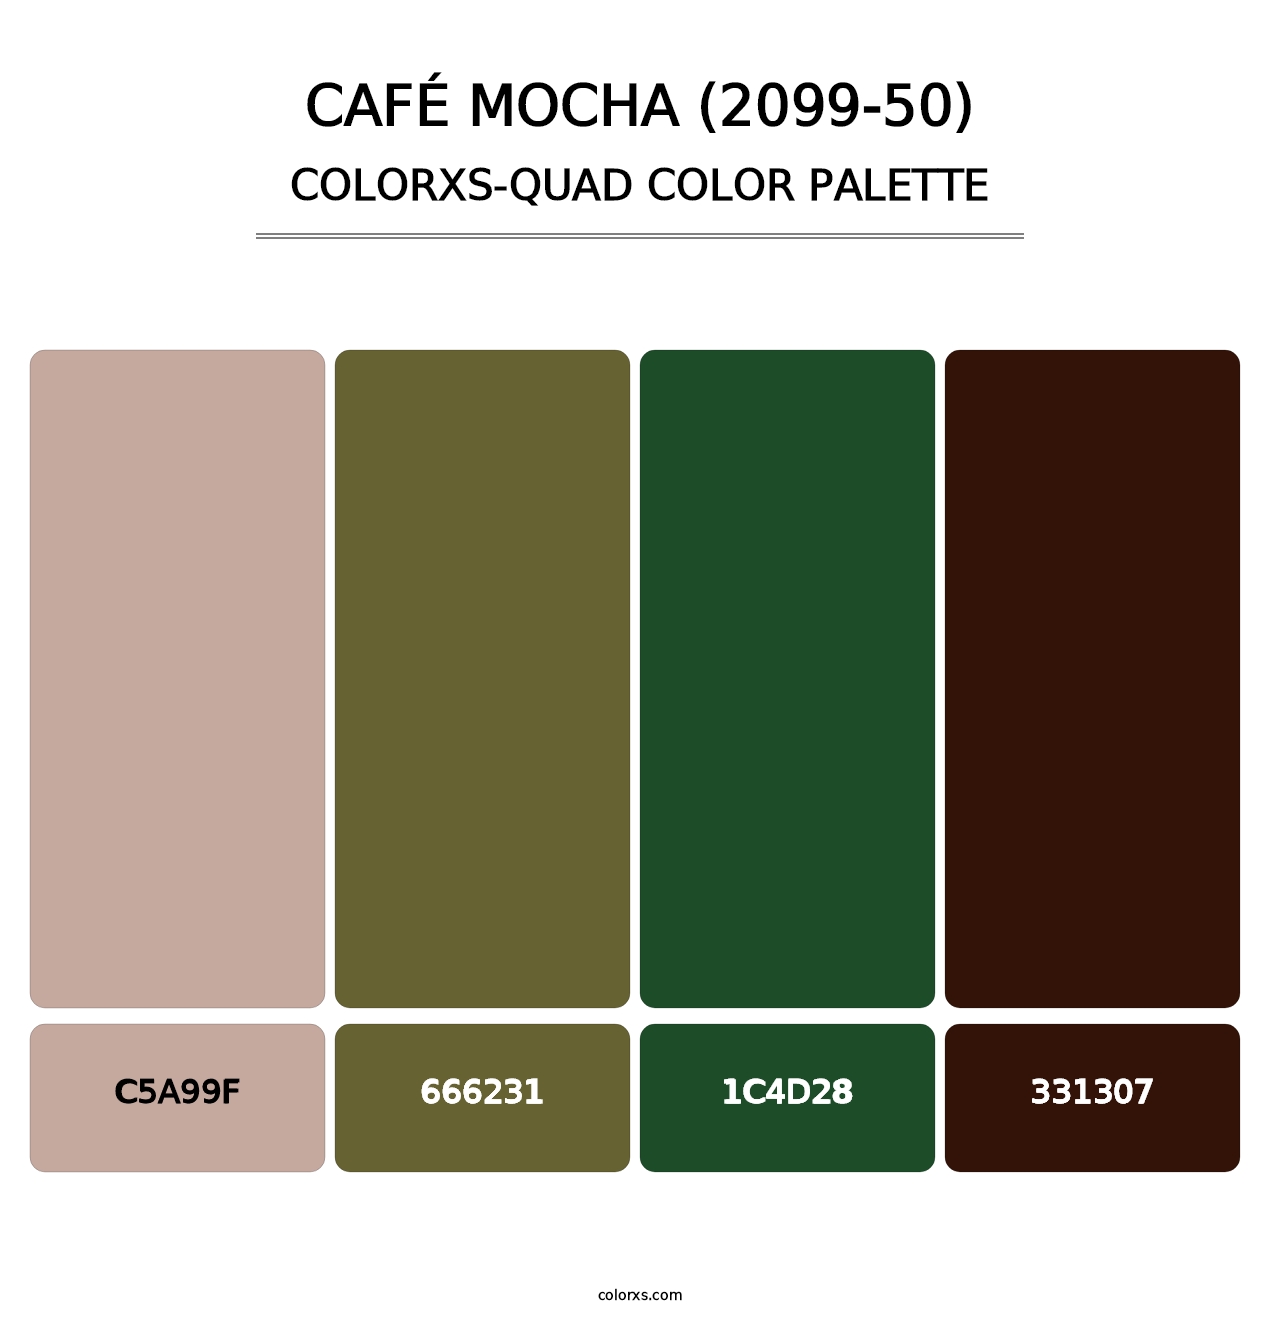 Café Mocha (2099-50) - Colorxs Quad Palette